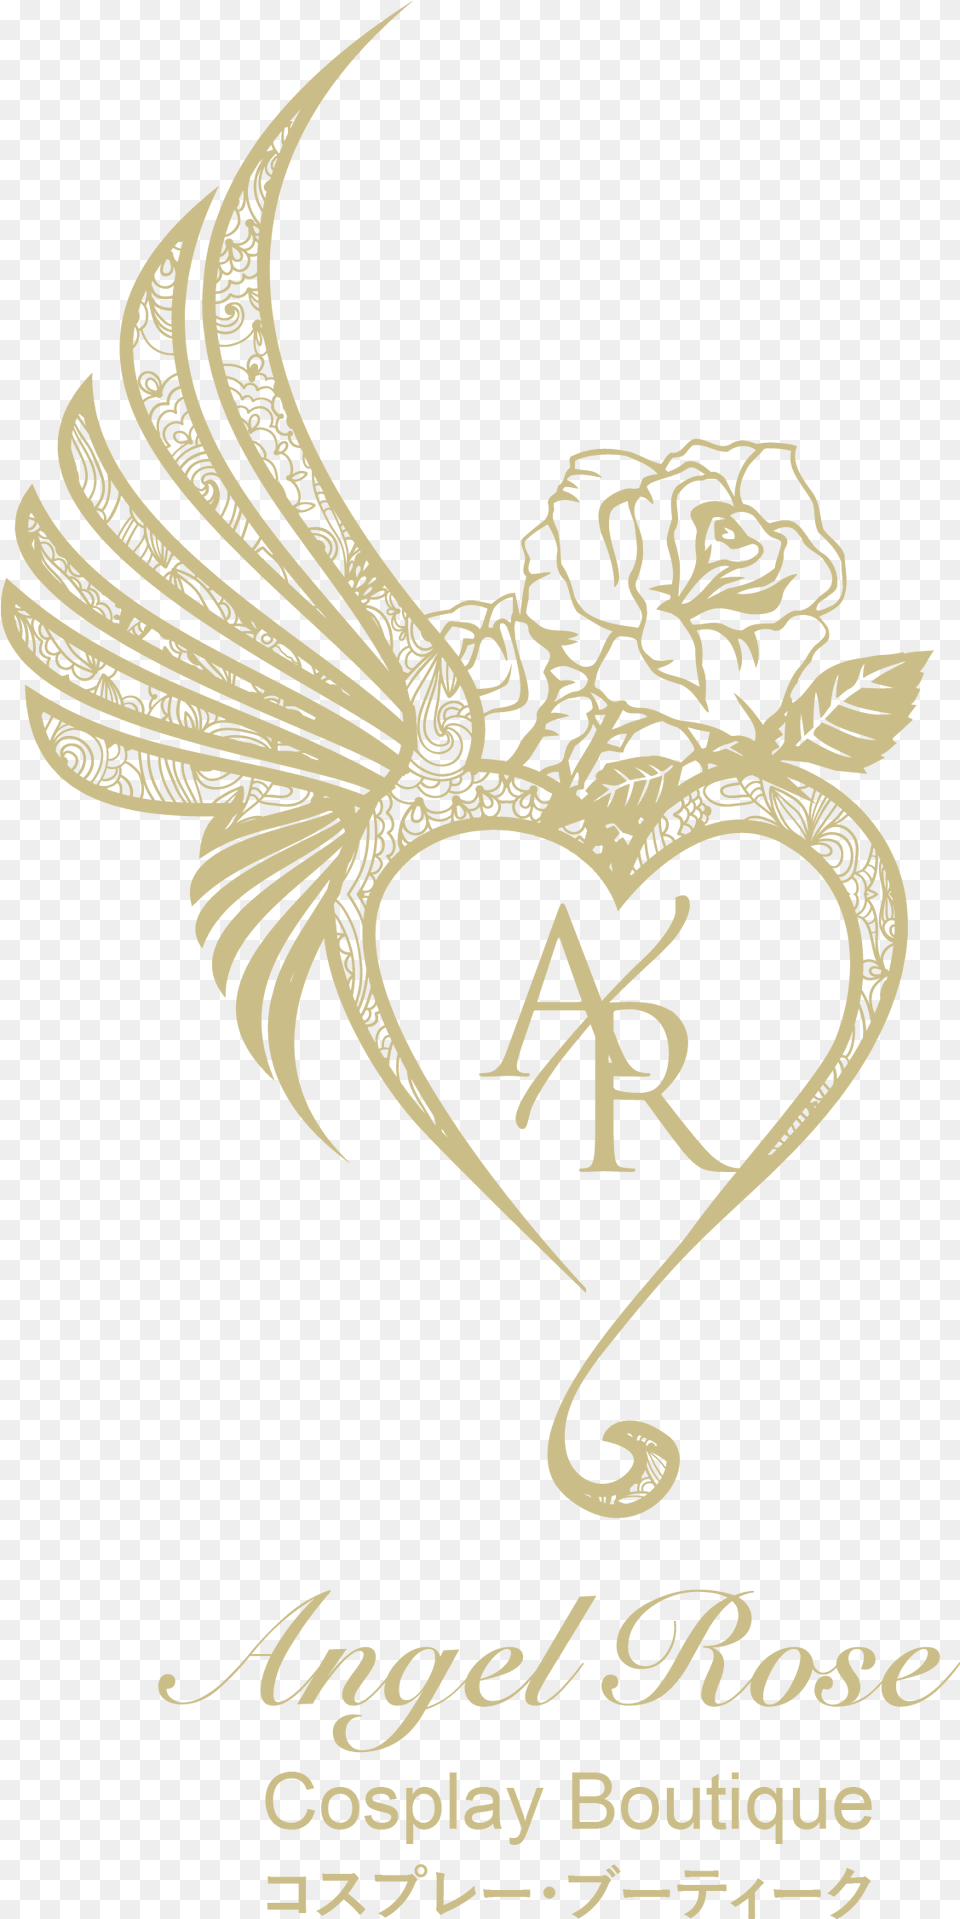 Logo Angel Rose Gambar Bunga Hitam Putih, Symbol, Animal, Fish, Sea Life Free Png